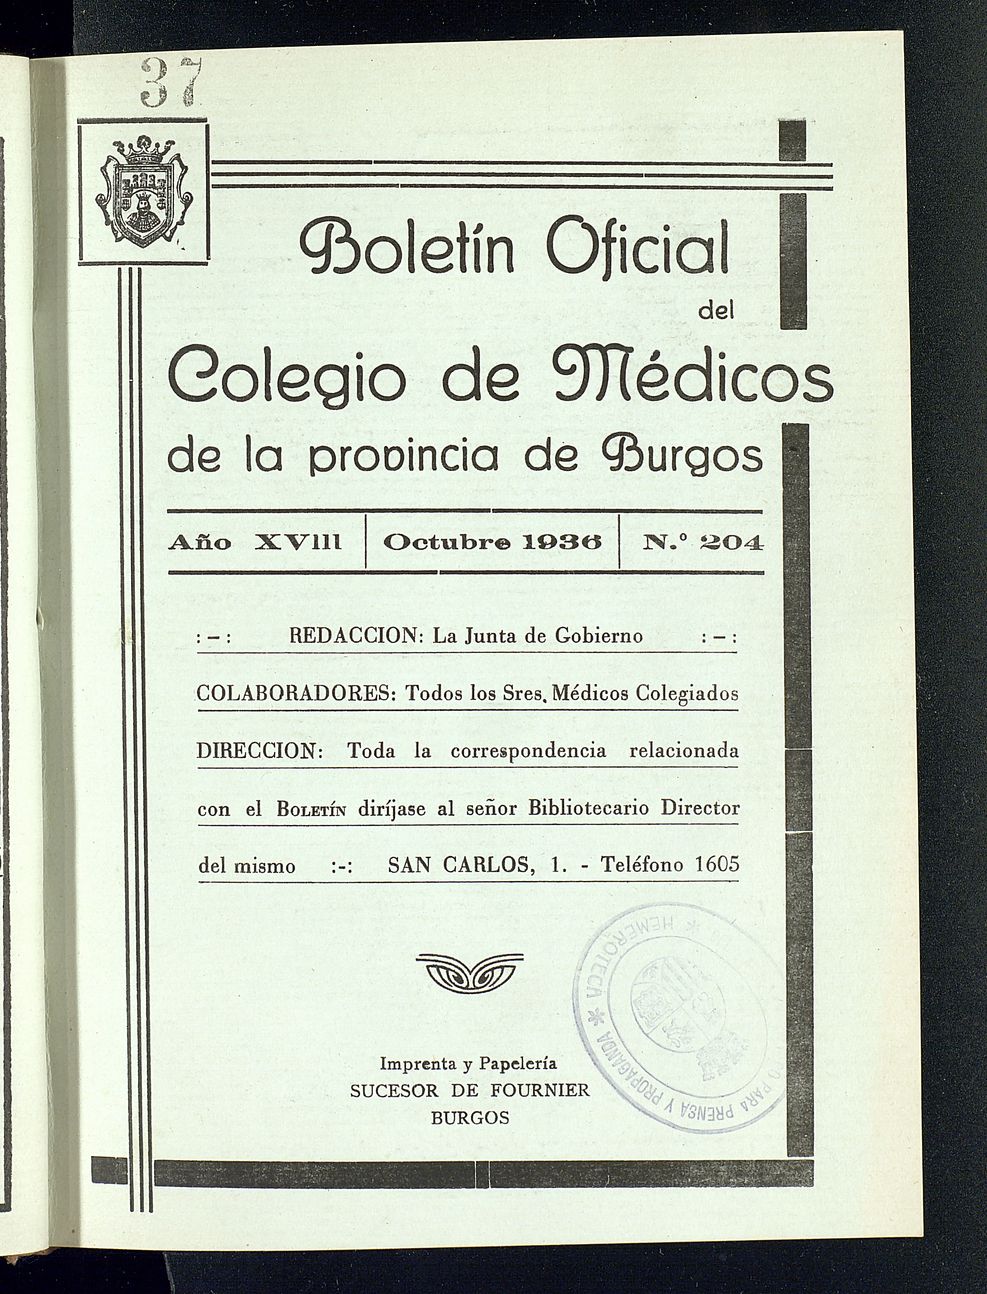 Boletín Oficial del Colegio de Médicos de la Provincia de Burgos. Octubre de 1936, nº 204